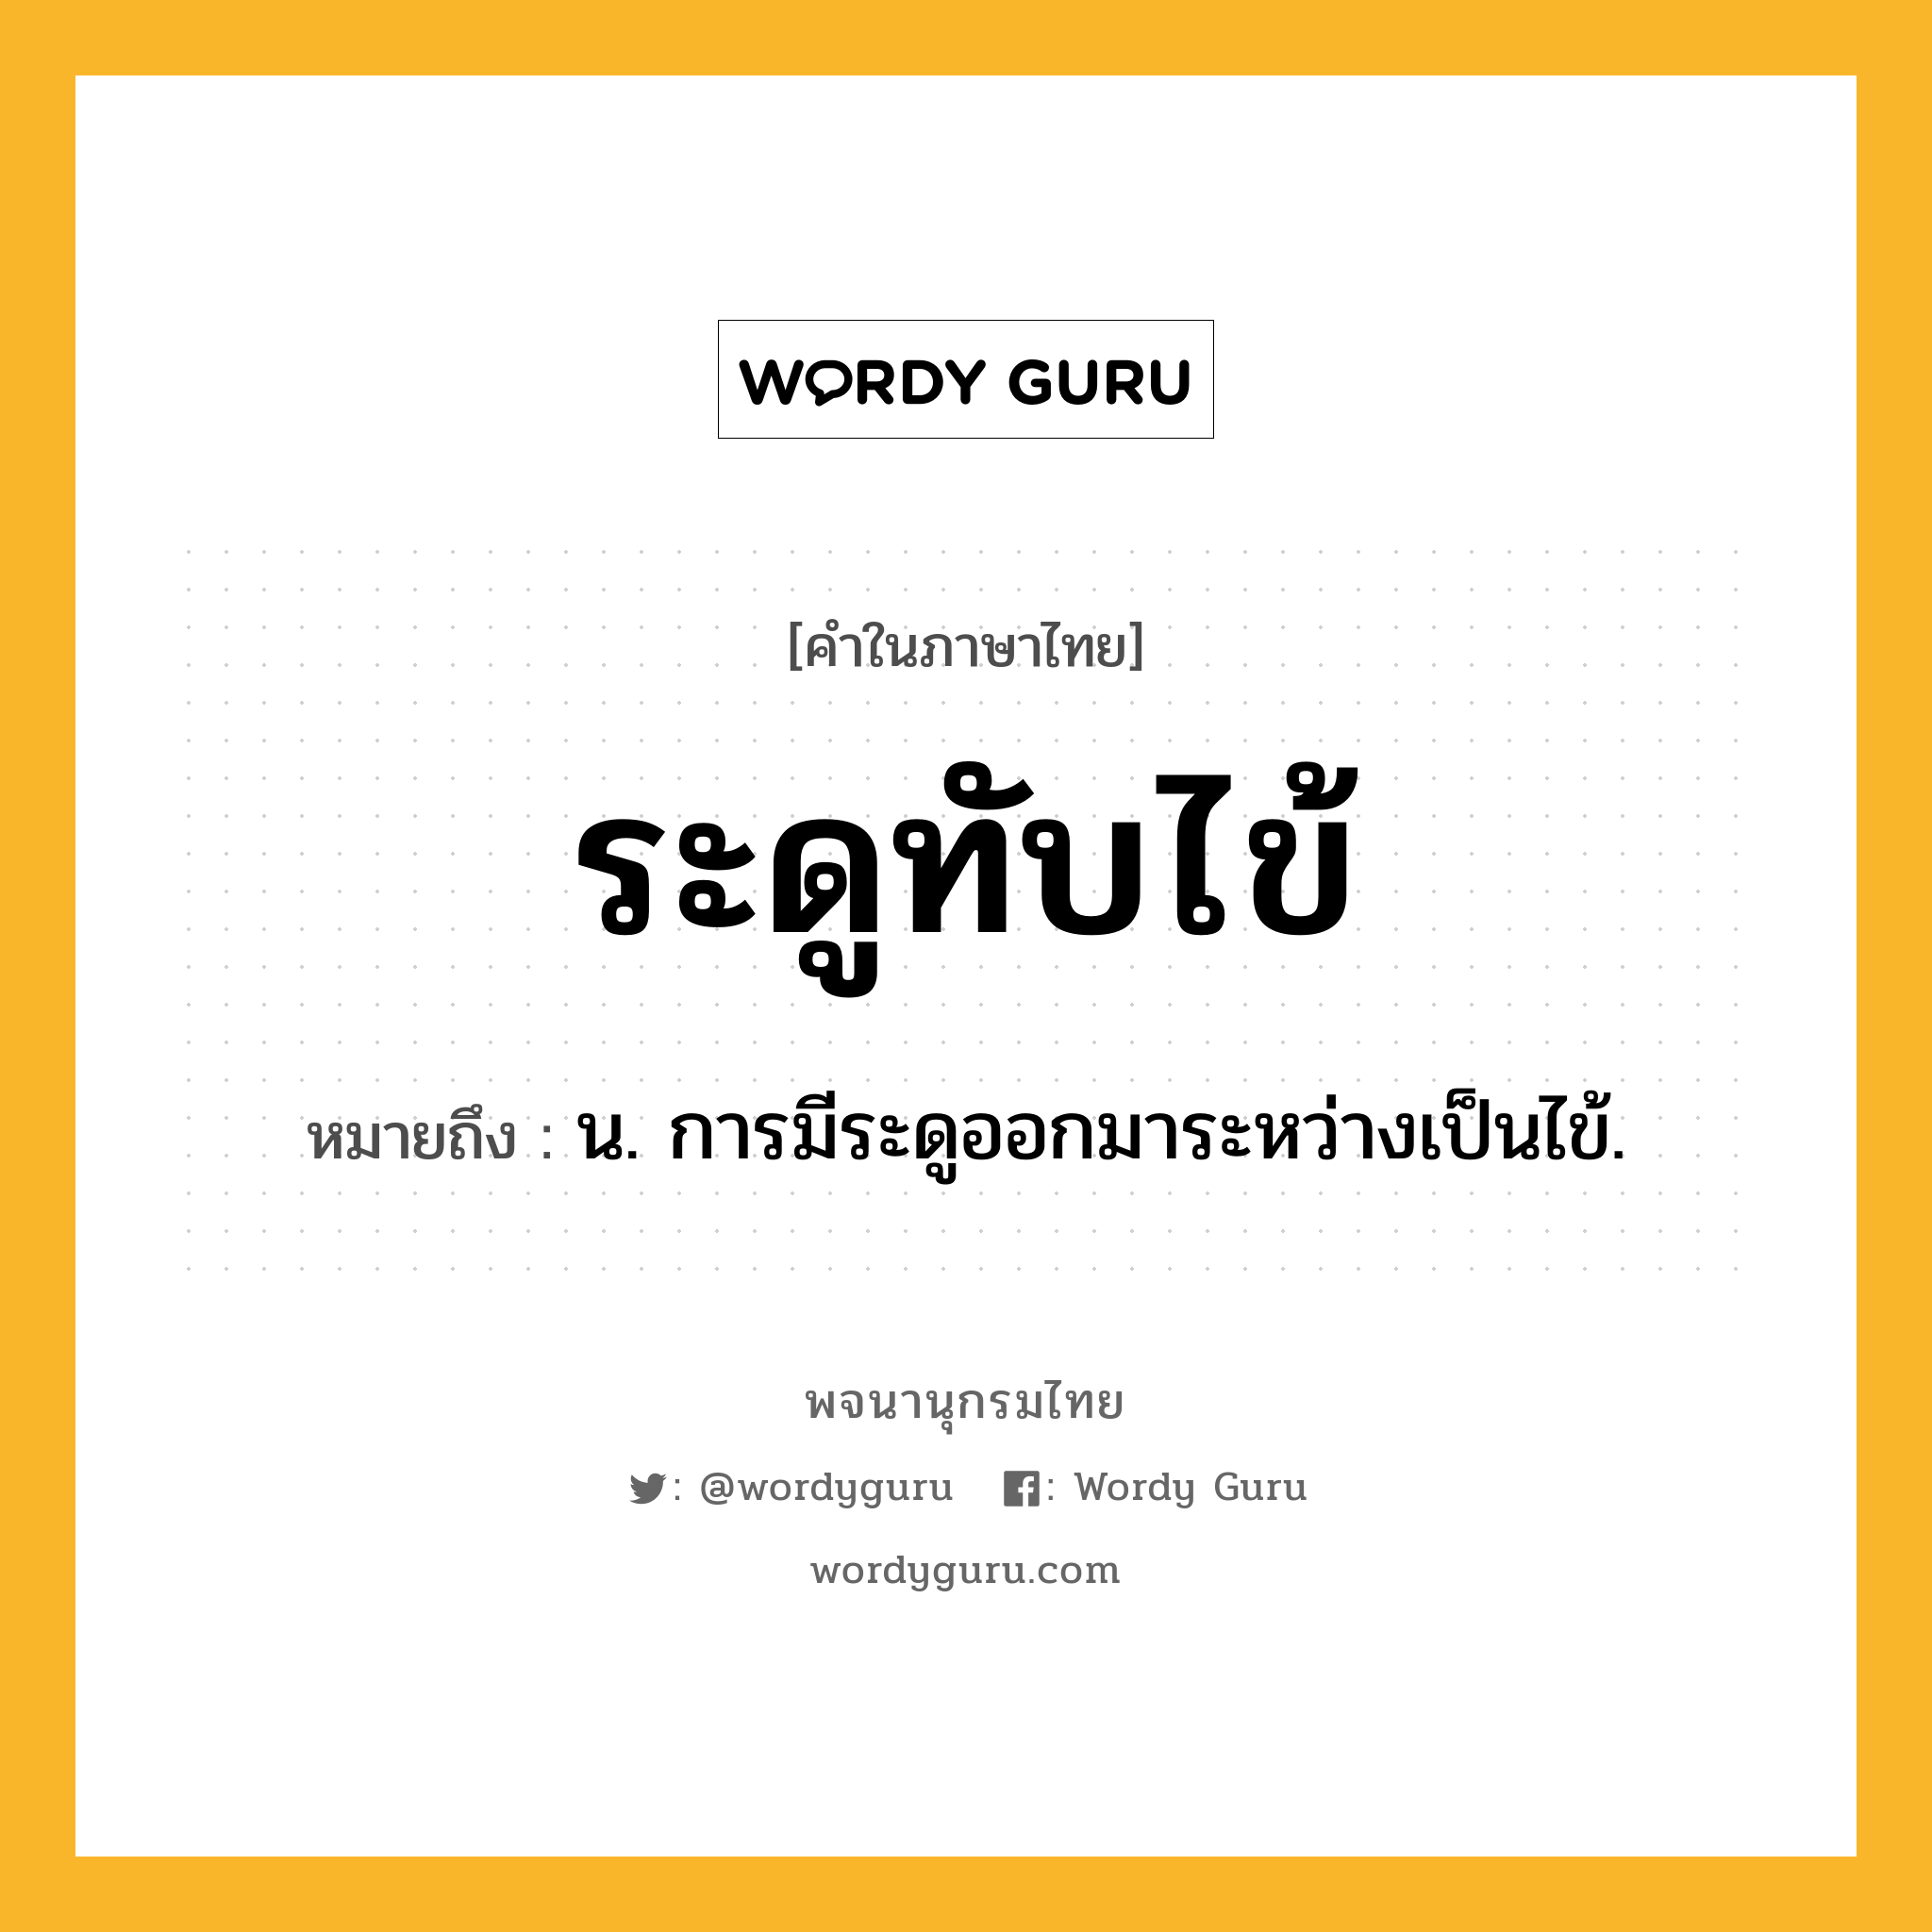 ระดูทับไข้ ความหมาย หมายถึงอะไร?, คำในภาษาไทย ระดูทับไข้ หมายถึง น. การมีระดูออกมาระหว่างเป็นไข้.